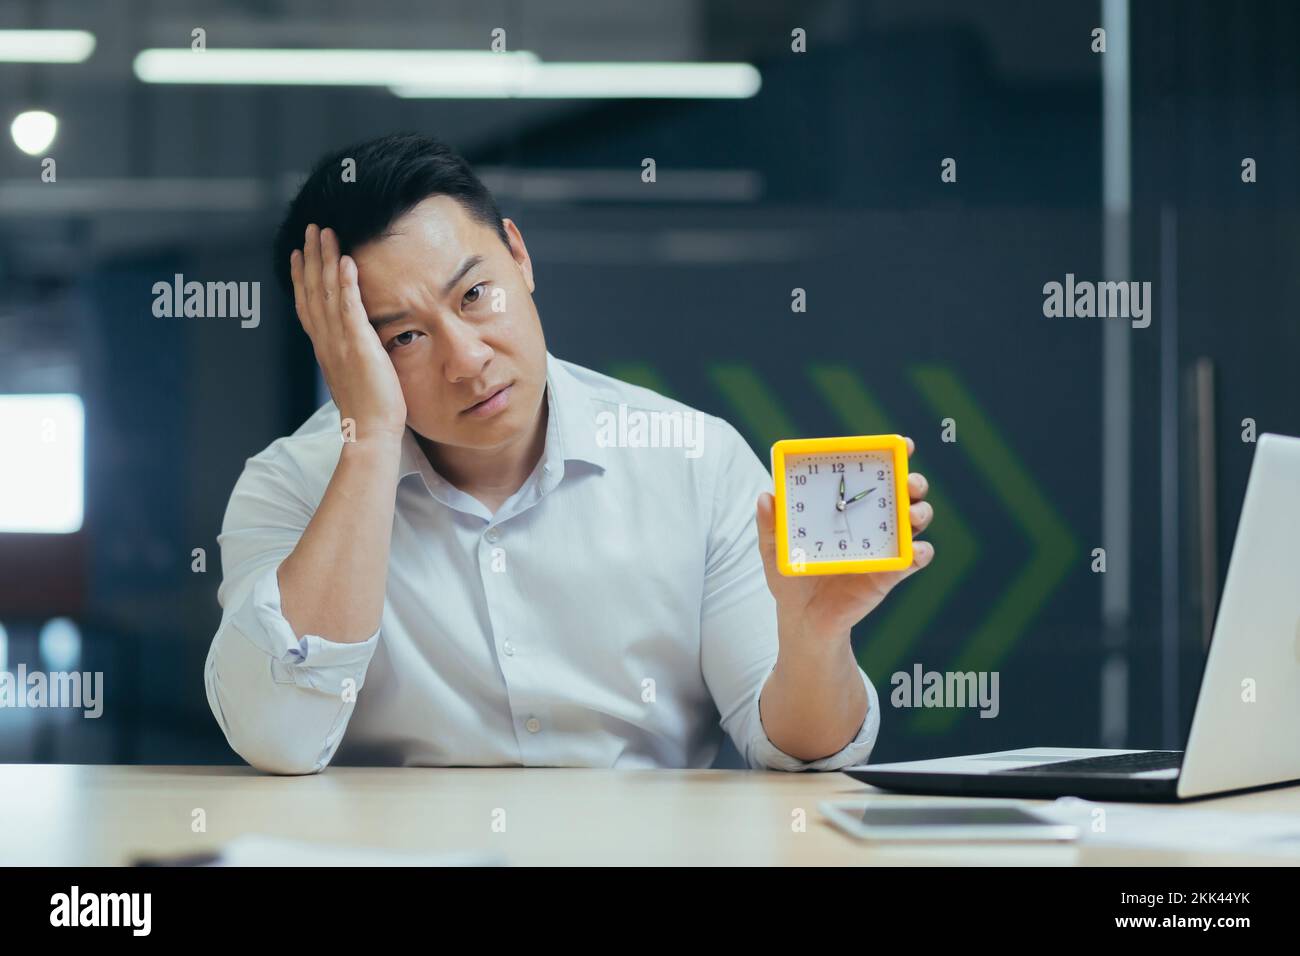 Erschöpfung bei der Arbeit, Burnout. Ein müder junger asiatischer Geschäftsmann, der im Büro sitzt und eine Uhr in der Hand hält. Schläft ein, legt seinen Kopf auf seine Hand. Warten auf das Ende des Arbeitstages. Stockfoto